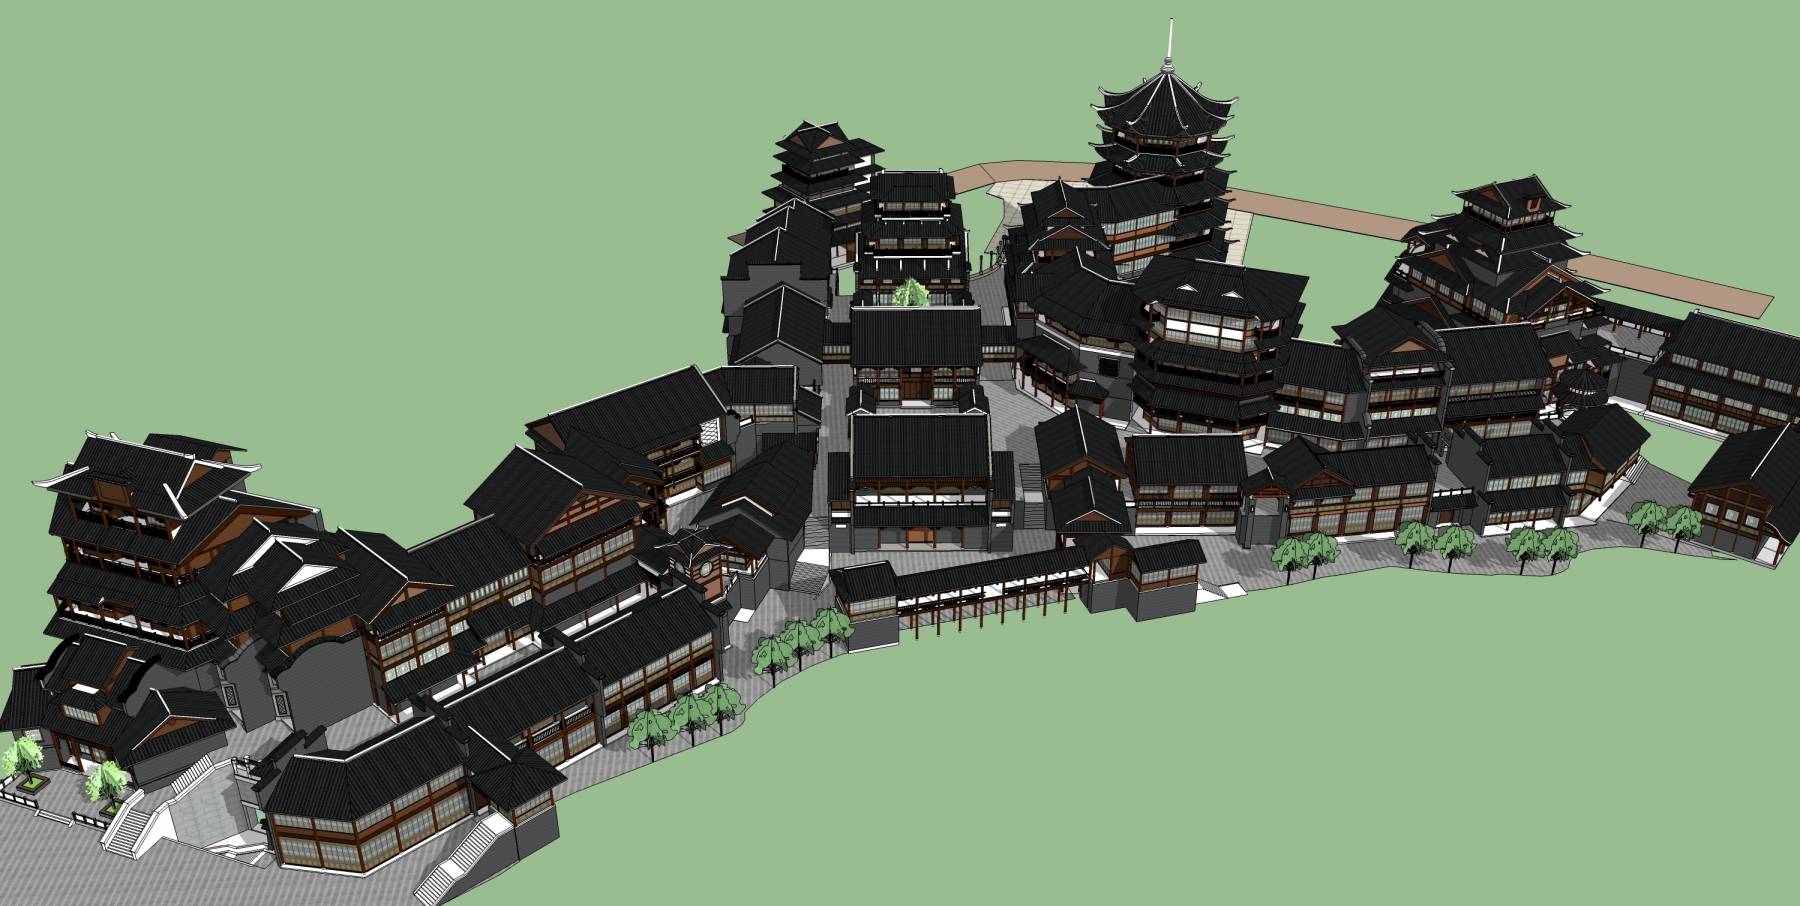 中式古城区古建筑古镇模型塔楼suu